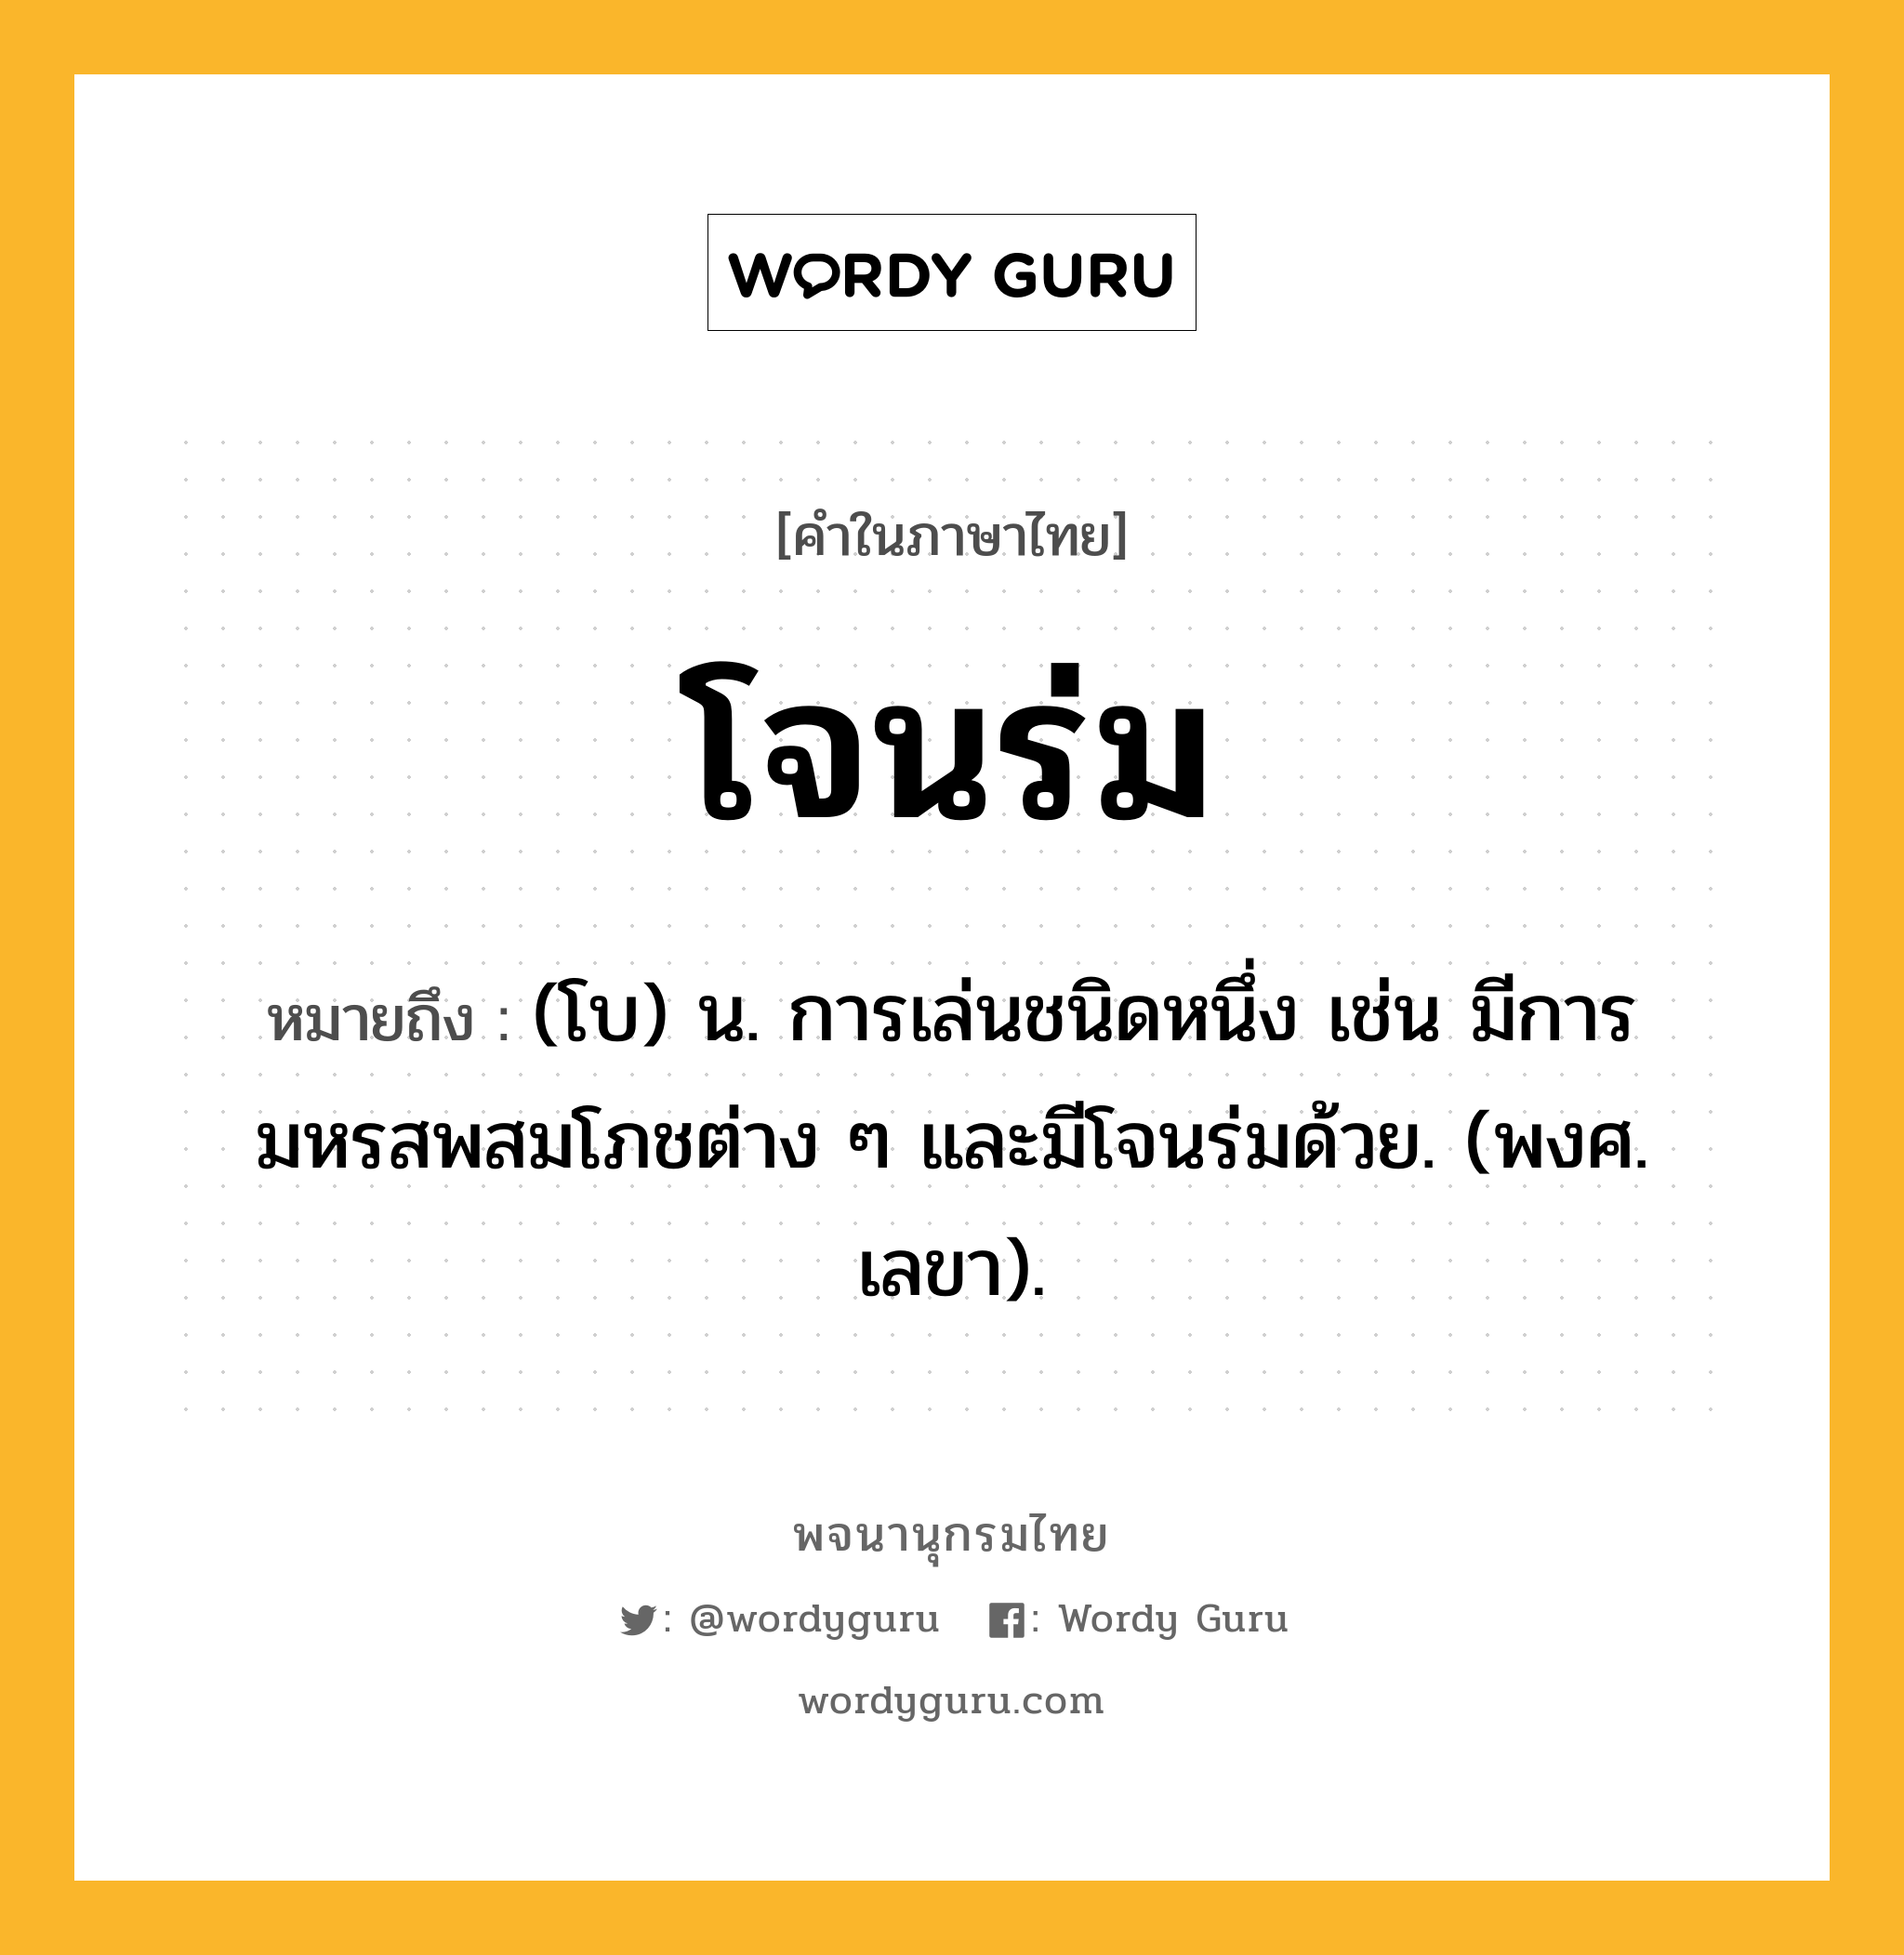 โจนร่ม หมายถึงอะไร?, คำในภาษาไทย โจนร่ม หมายถึง (โบ) น. การเล่นชนิดหนึ่ง เช่น มีการมหรสพสมโภชต่าง ๆ และมีโจนร่มด้วย. (พงศ. เลขา).